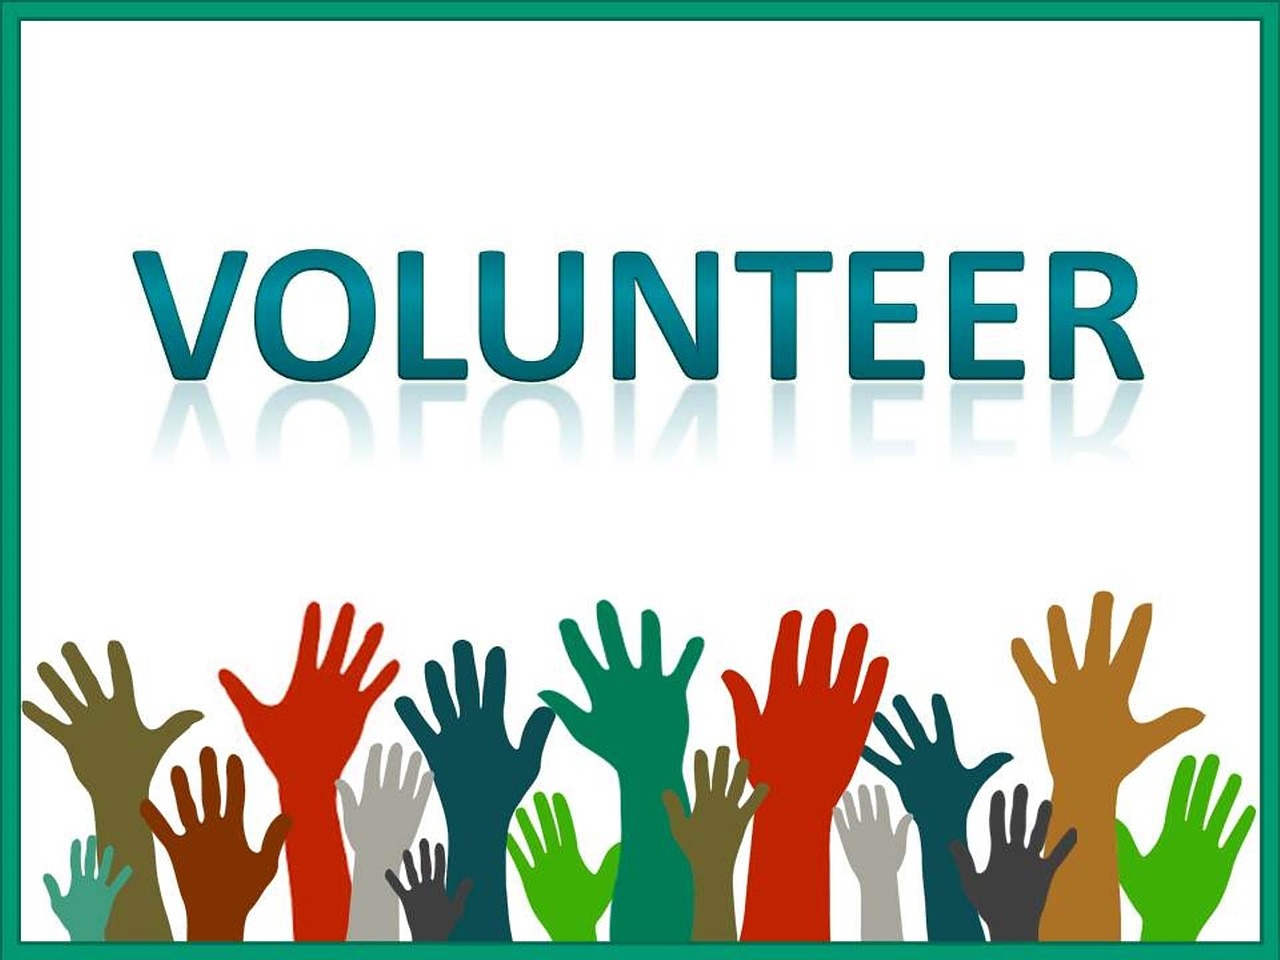 volunteer, volunteerism, volunteering